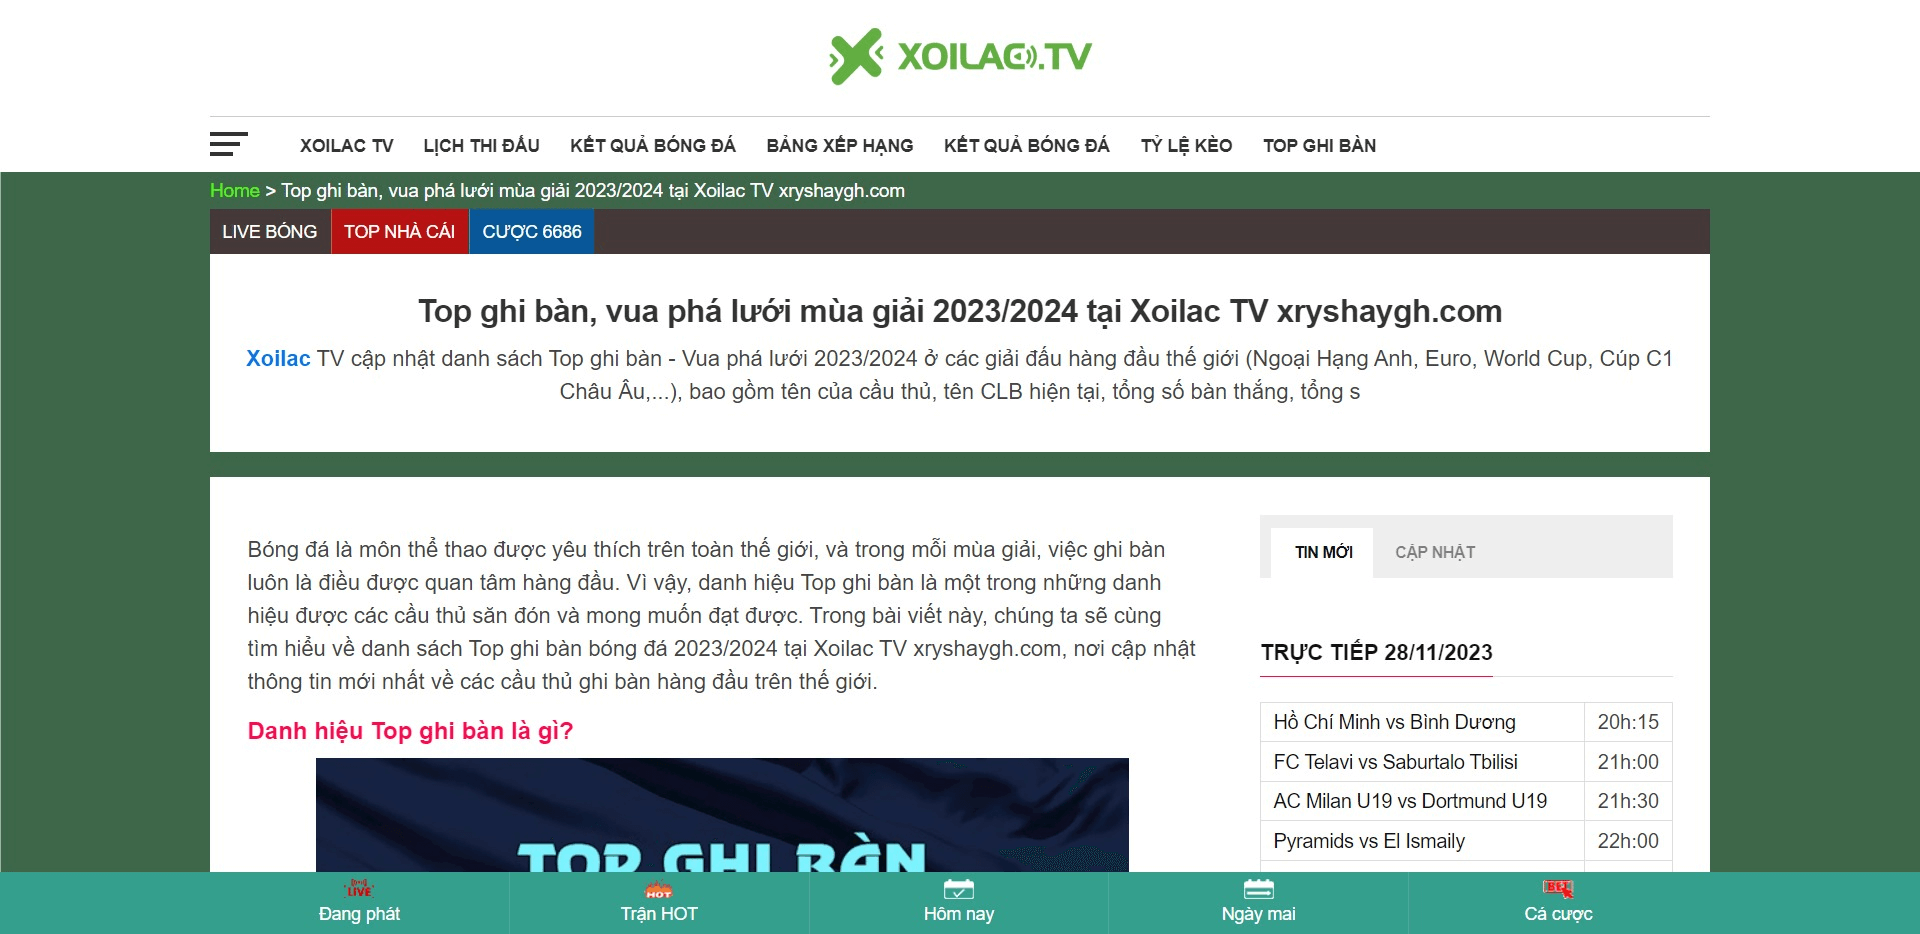 Website Xoilac TV có gì đặc biệt hơn so với những trang web trực tiếp khác?